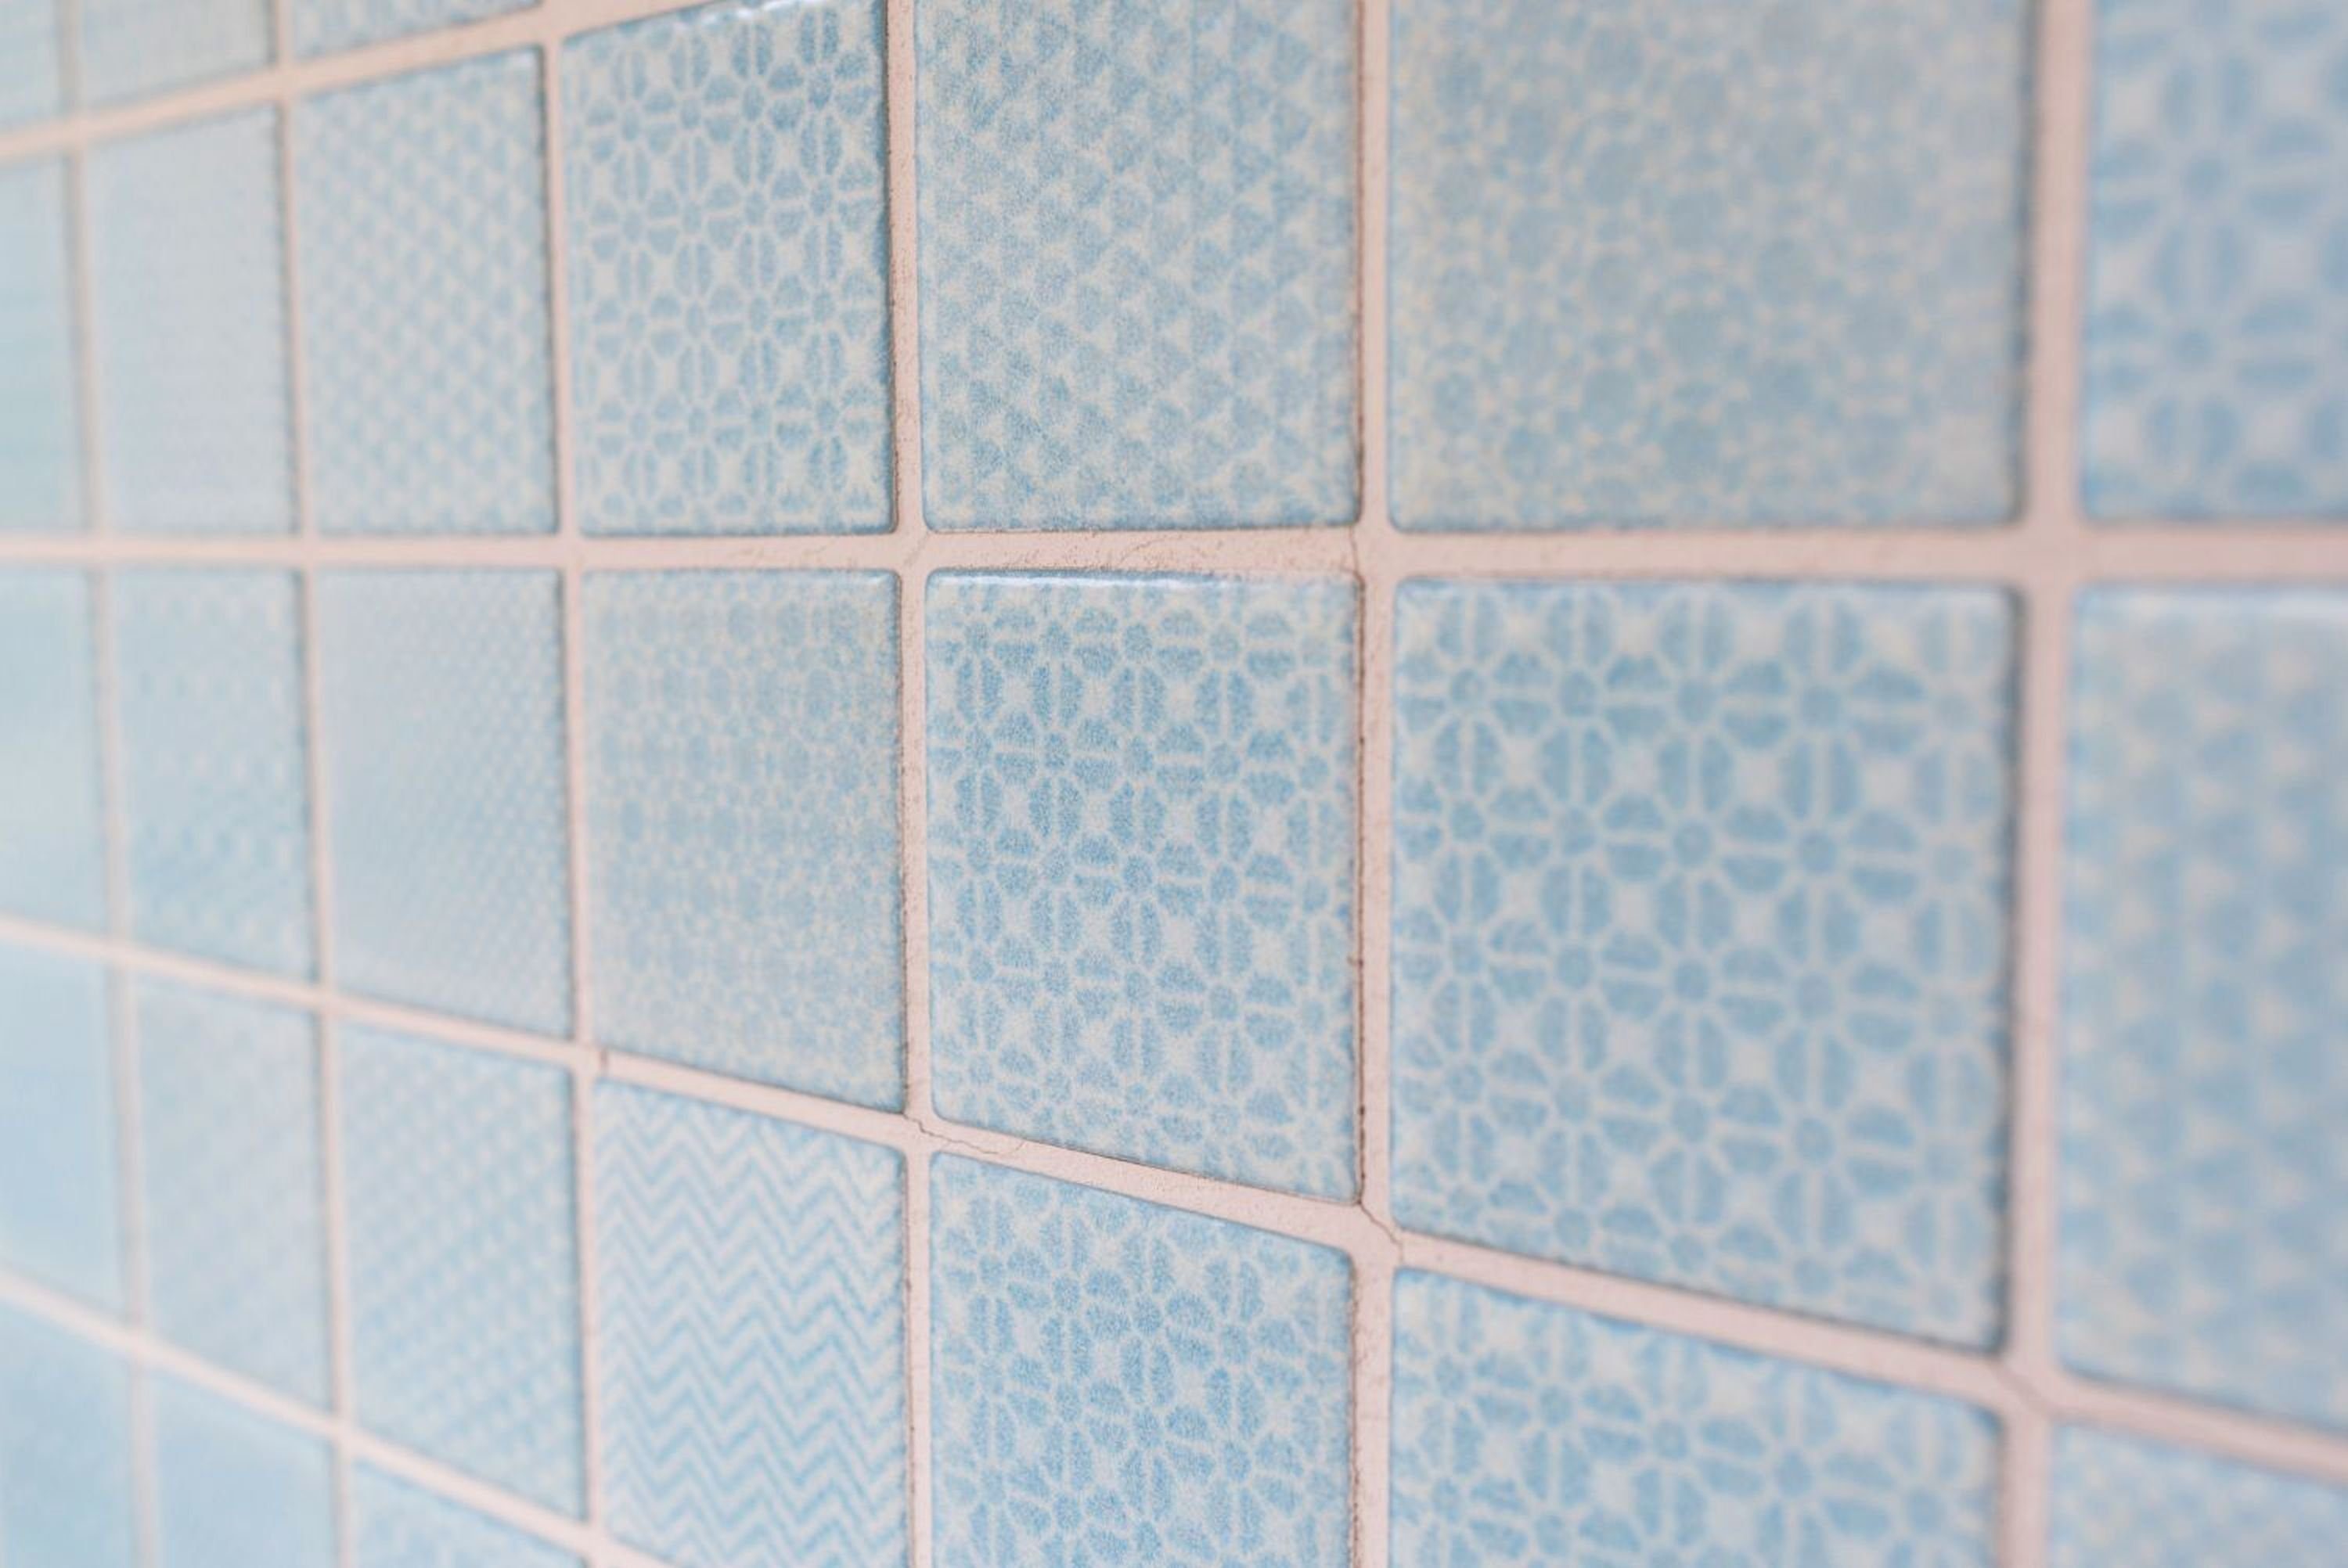 Mosani Mosaikfliesen Keramik Mosaik hellblau Küche BAD eisblau Pool Fliese Fliesenspiegel